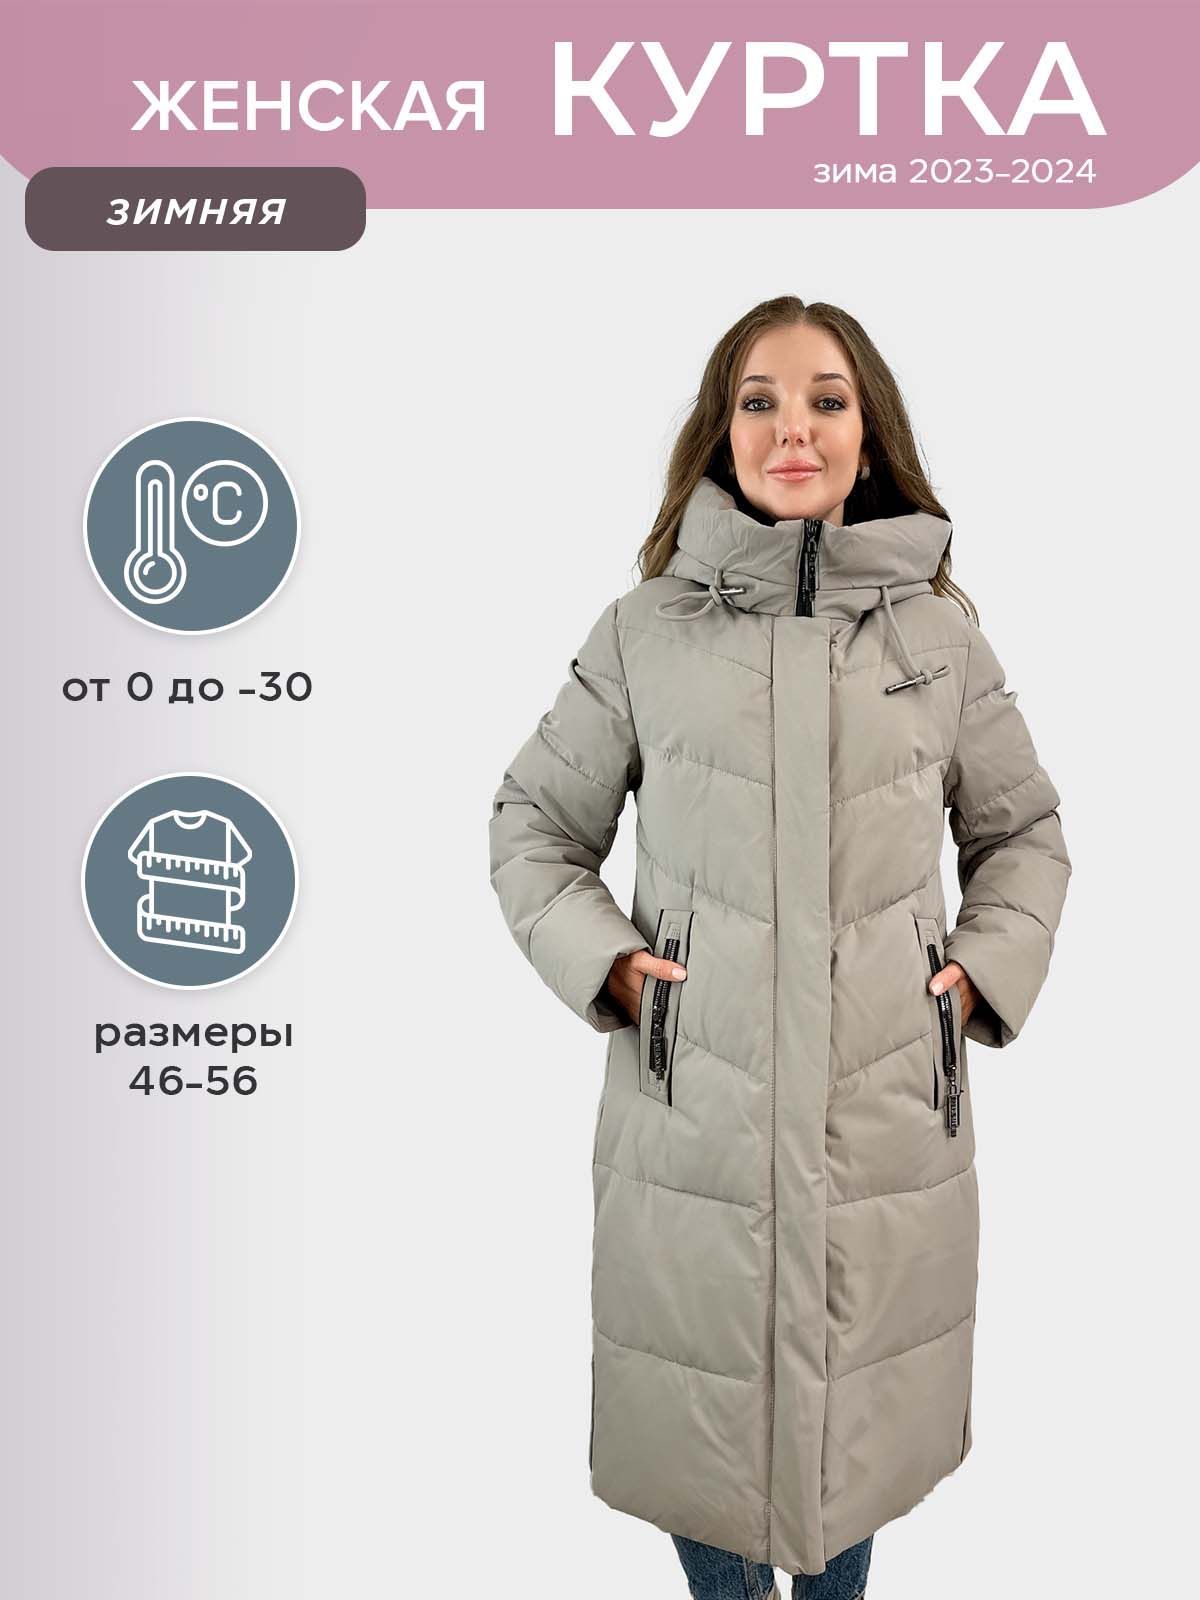 Женские куртки - Купить в Украине - Kidstaff